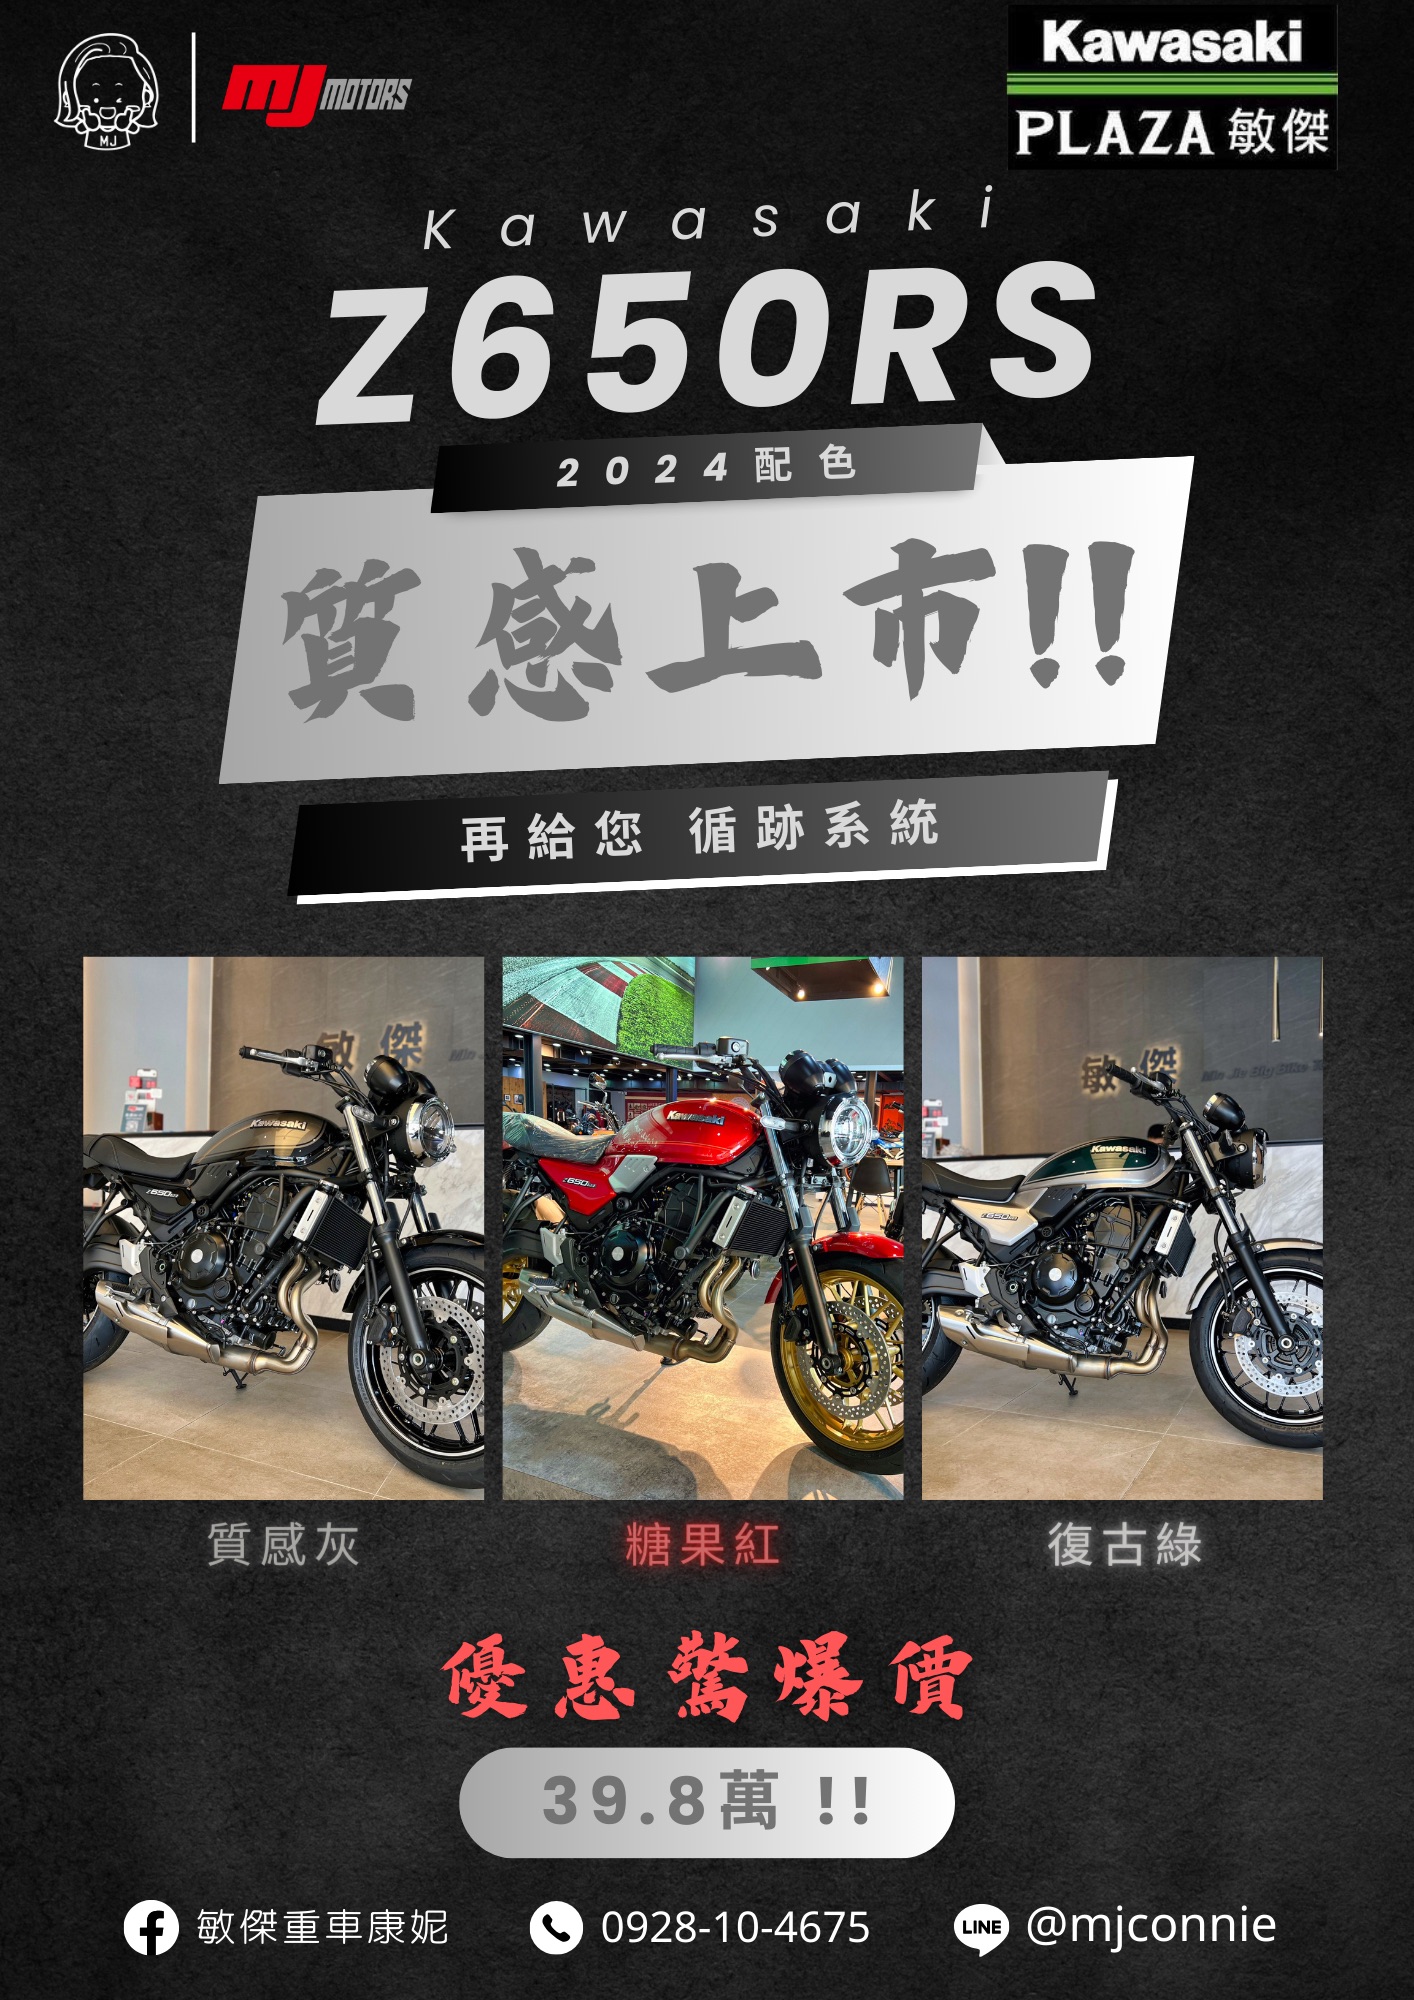 【敏傑車業資深銷售專員 康妮 Connie】Kawasaki Z650RS - 「Webike-摩托車市」 『敏傑康妮』2024 新配色到啦 Kawasaki Z650RS 敏傑康妮 有三色到齊 還有循跡系統 趕緊卡位嘍